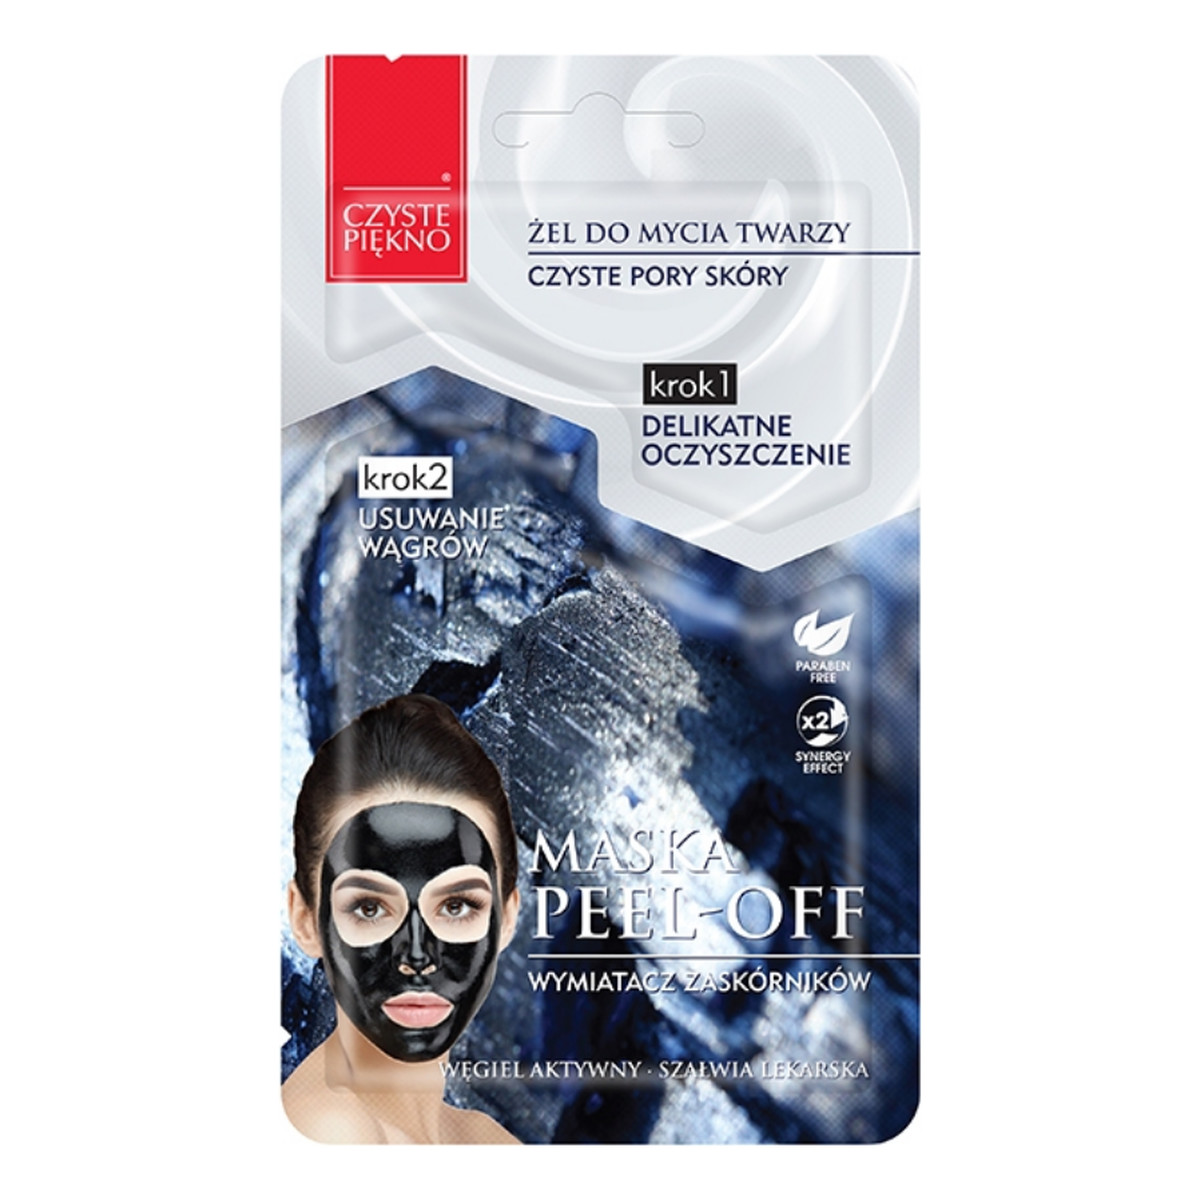 Estetica Czyste Piękno Maska Peel Off Wymiatacz Zaskórników Maska Z Aktywnym Węglem I Szałwią Lekarską 10ml